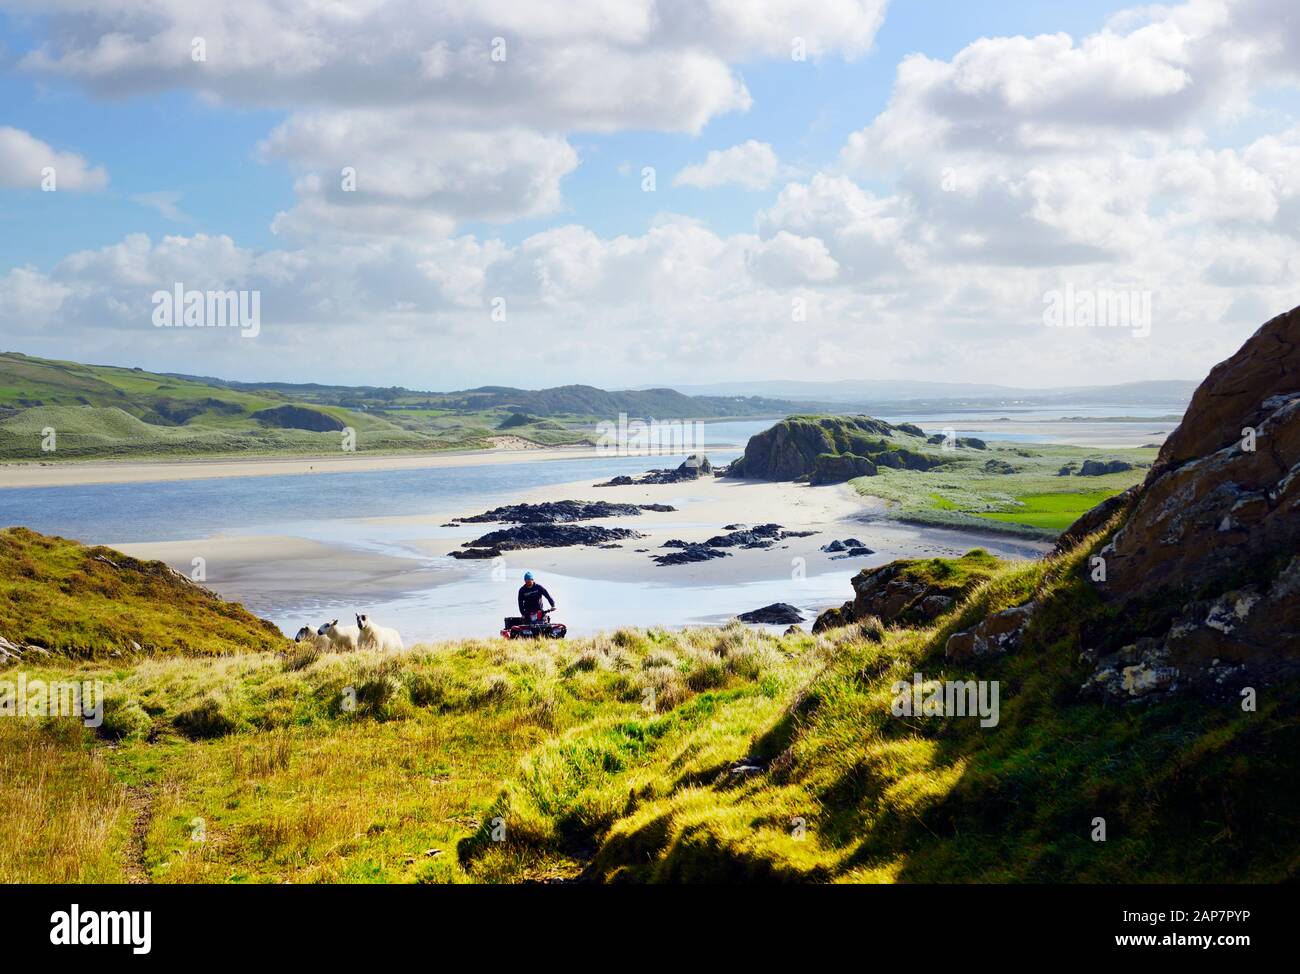 Péninsule D'Inishowen, Donegal, Irlande. Sur l'île de Doagh regardant S.E. sur la baie de Trawbreaga de marée. Agriculteur sur quad gérant des moutons de colline. Été Banque D'Images